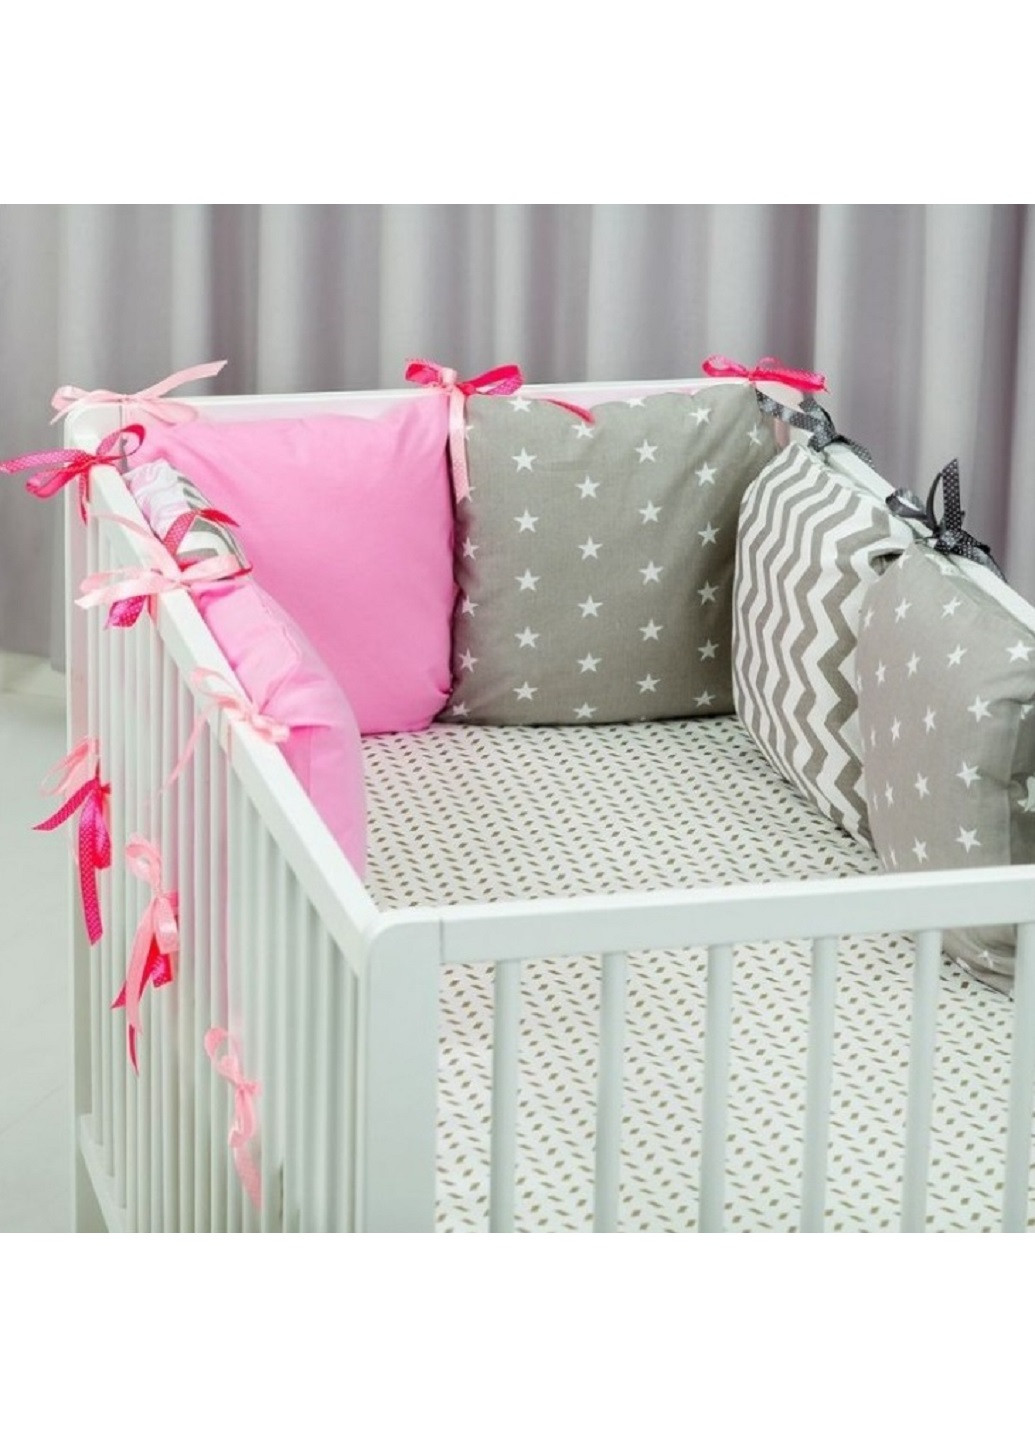 Комплект в детскую кроватку кровать люльку набор бортики защита на три стороны постельное белье ручной работы (28581-Нов) Unbranded (253188949)